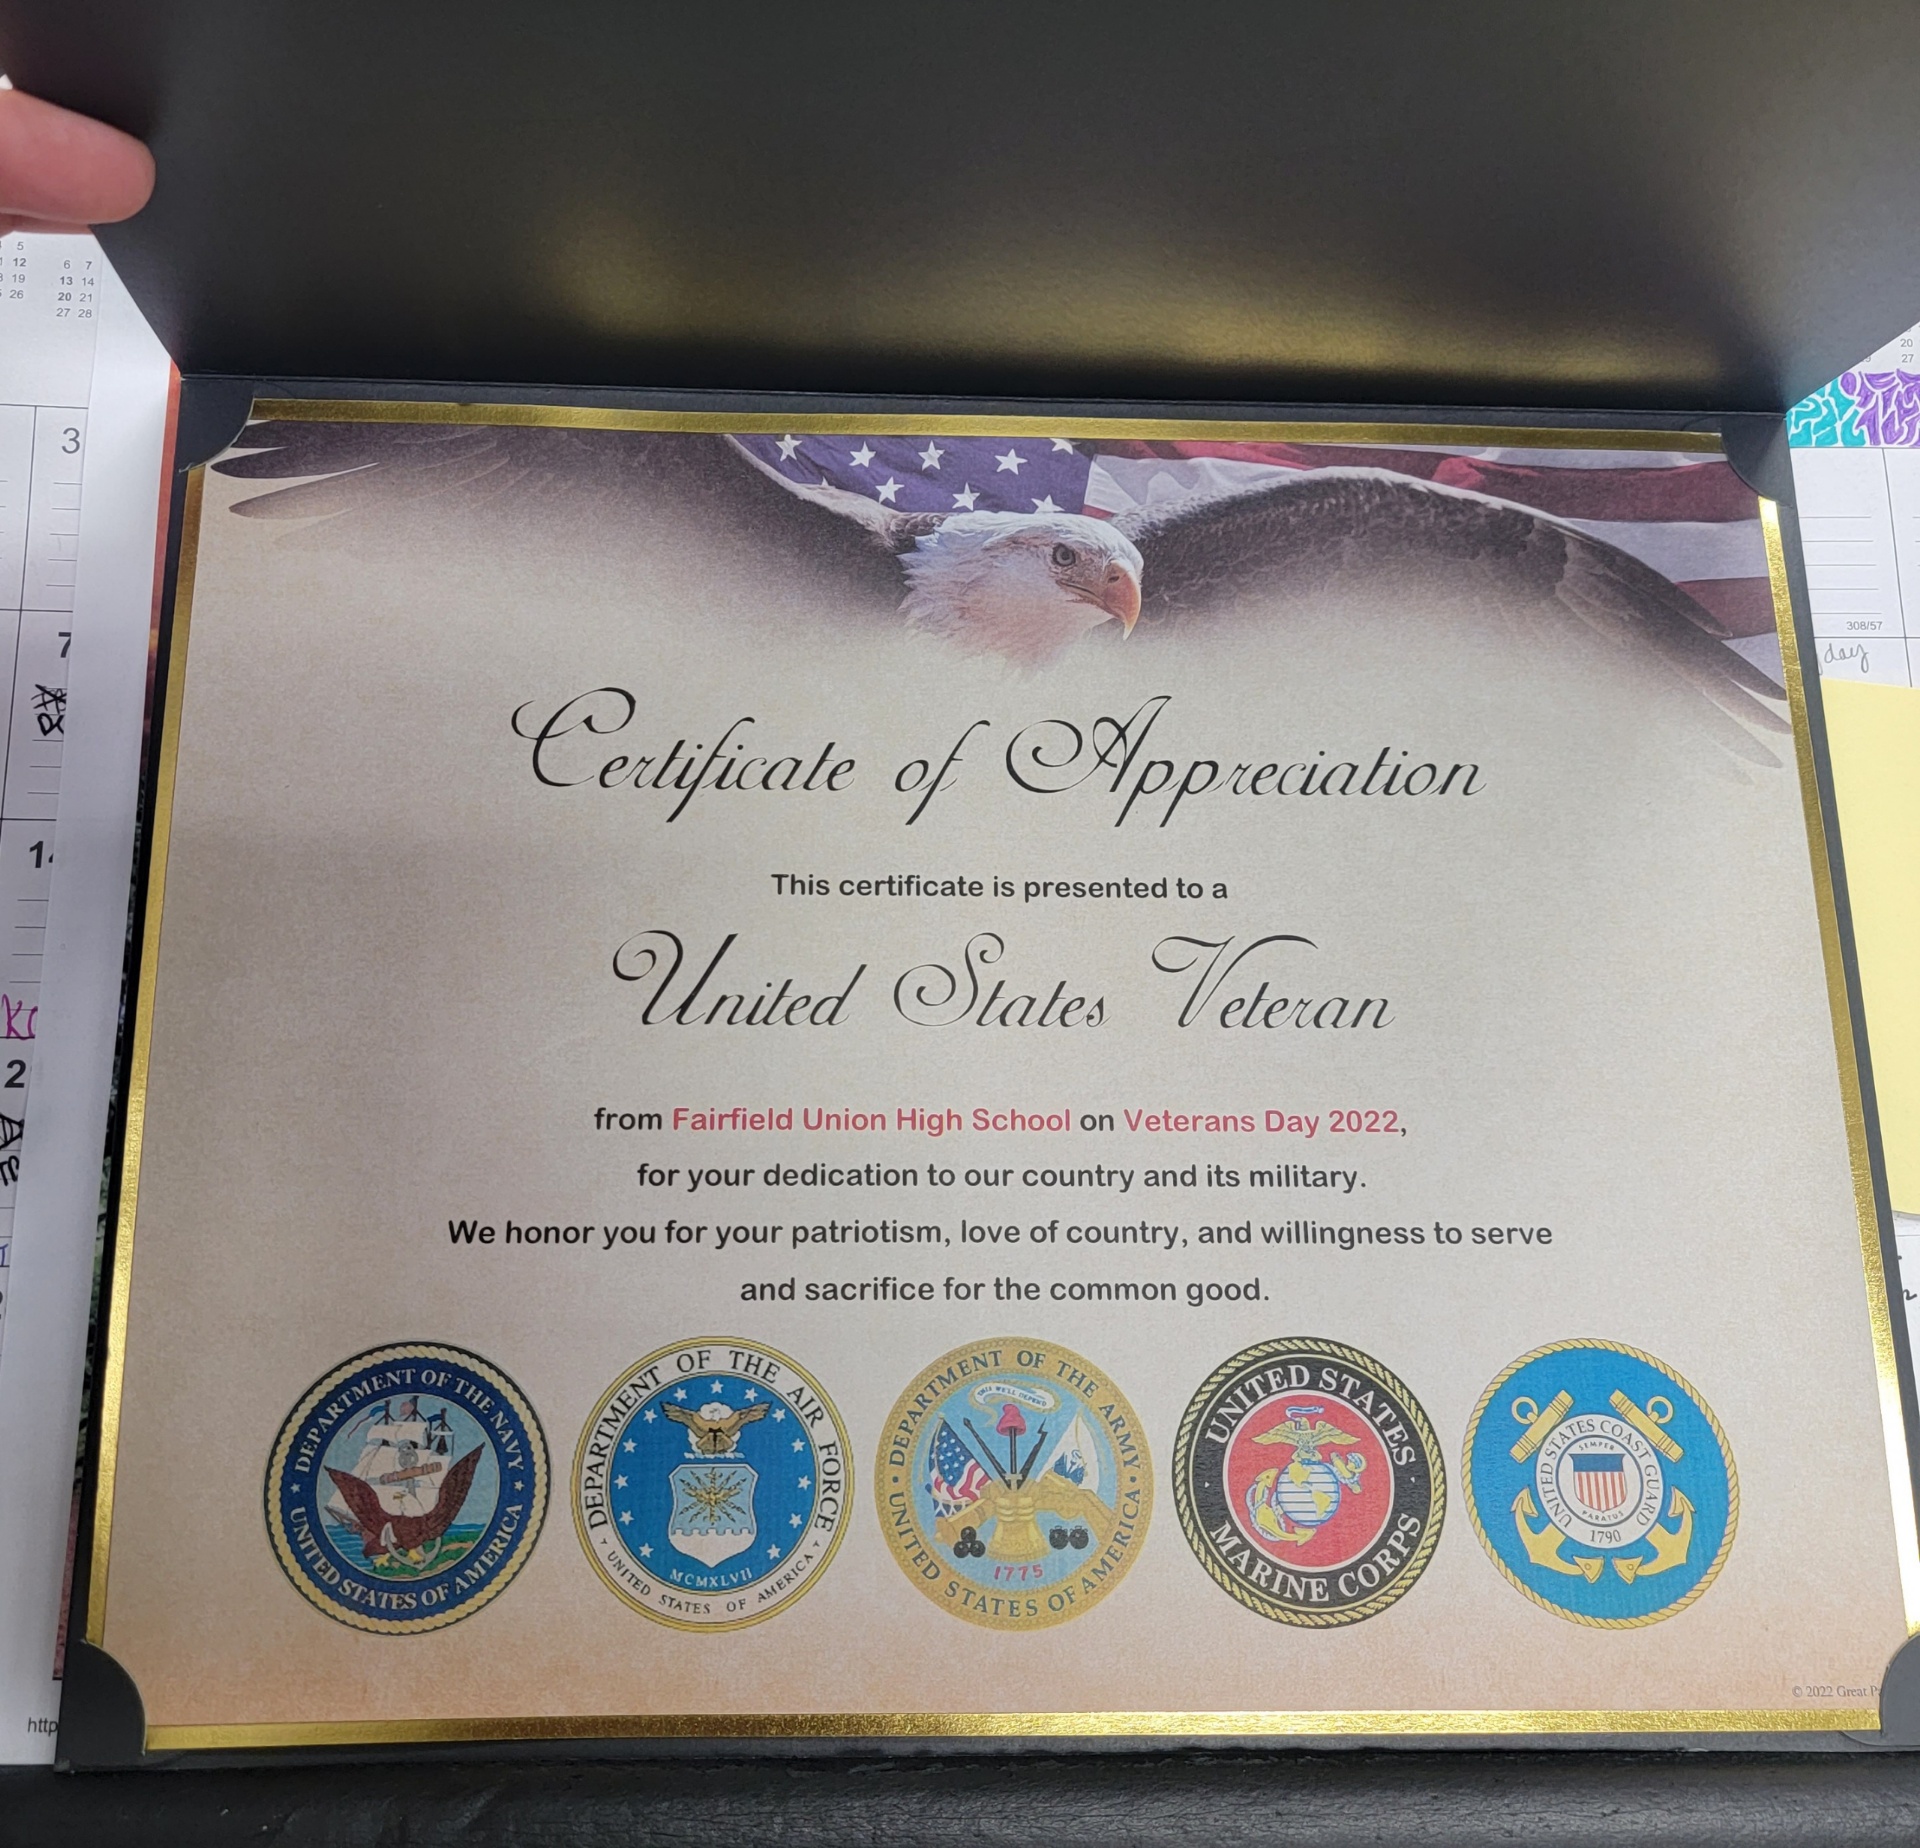 A photo of the certificate of appreciate each veteran received.